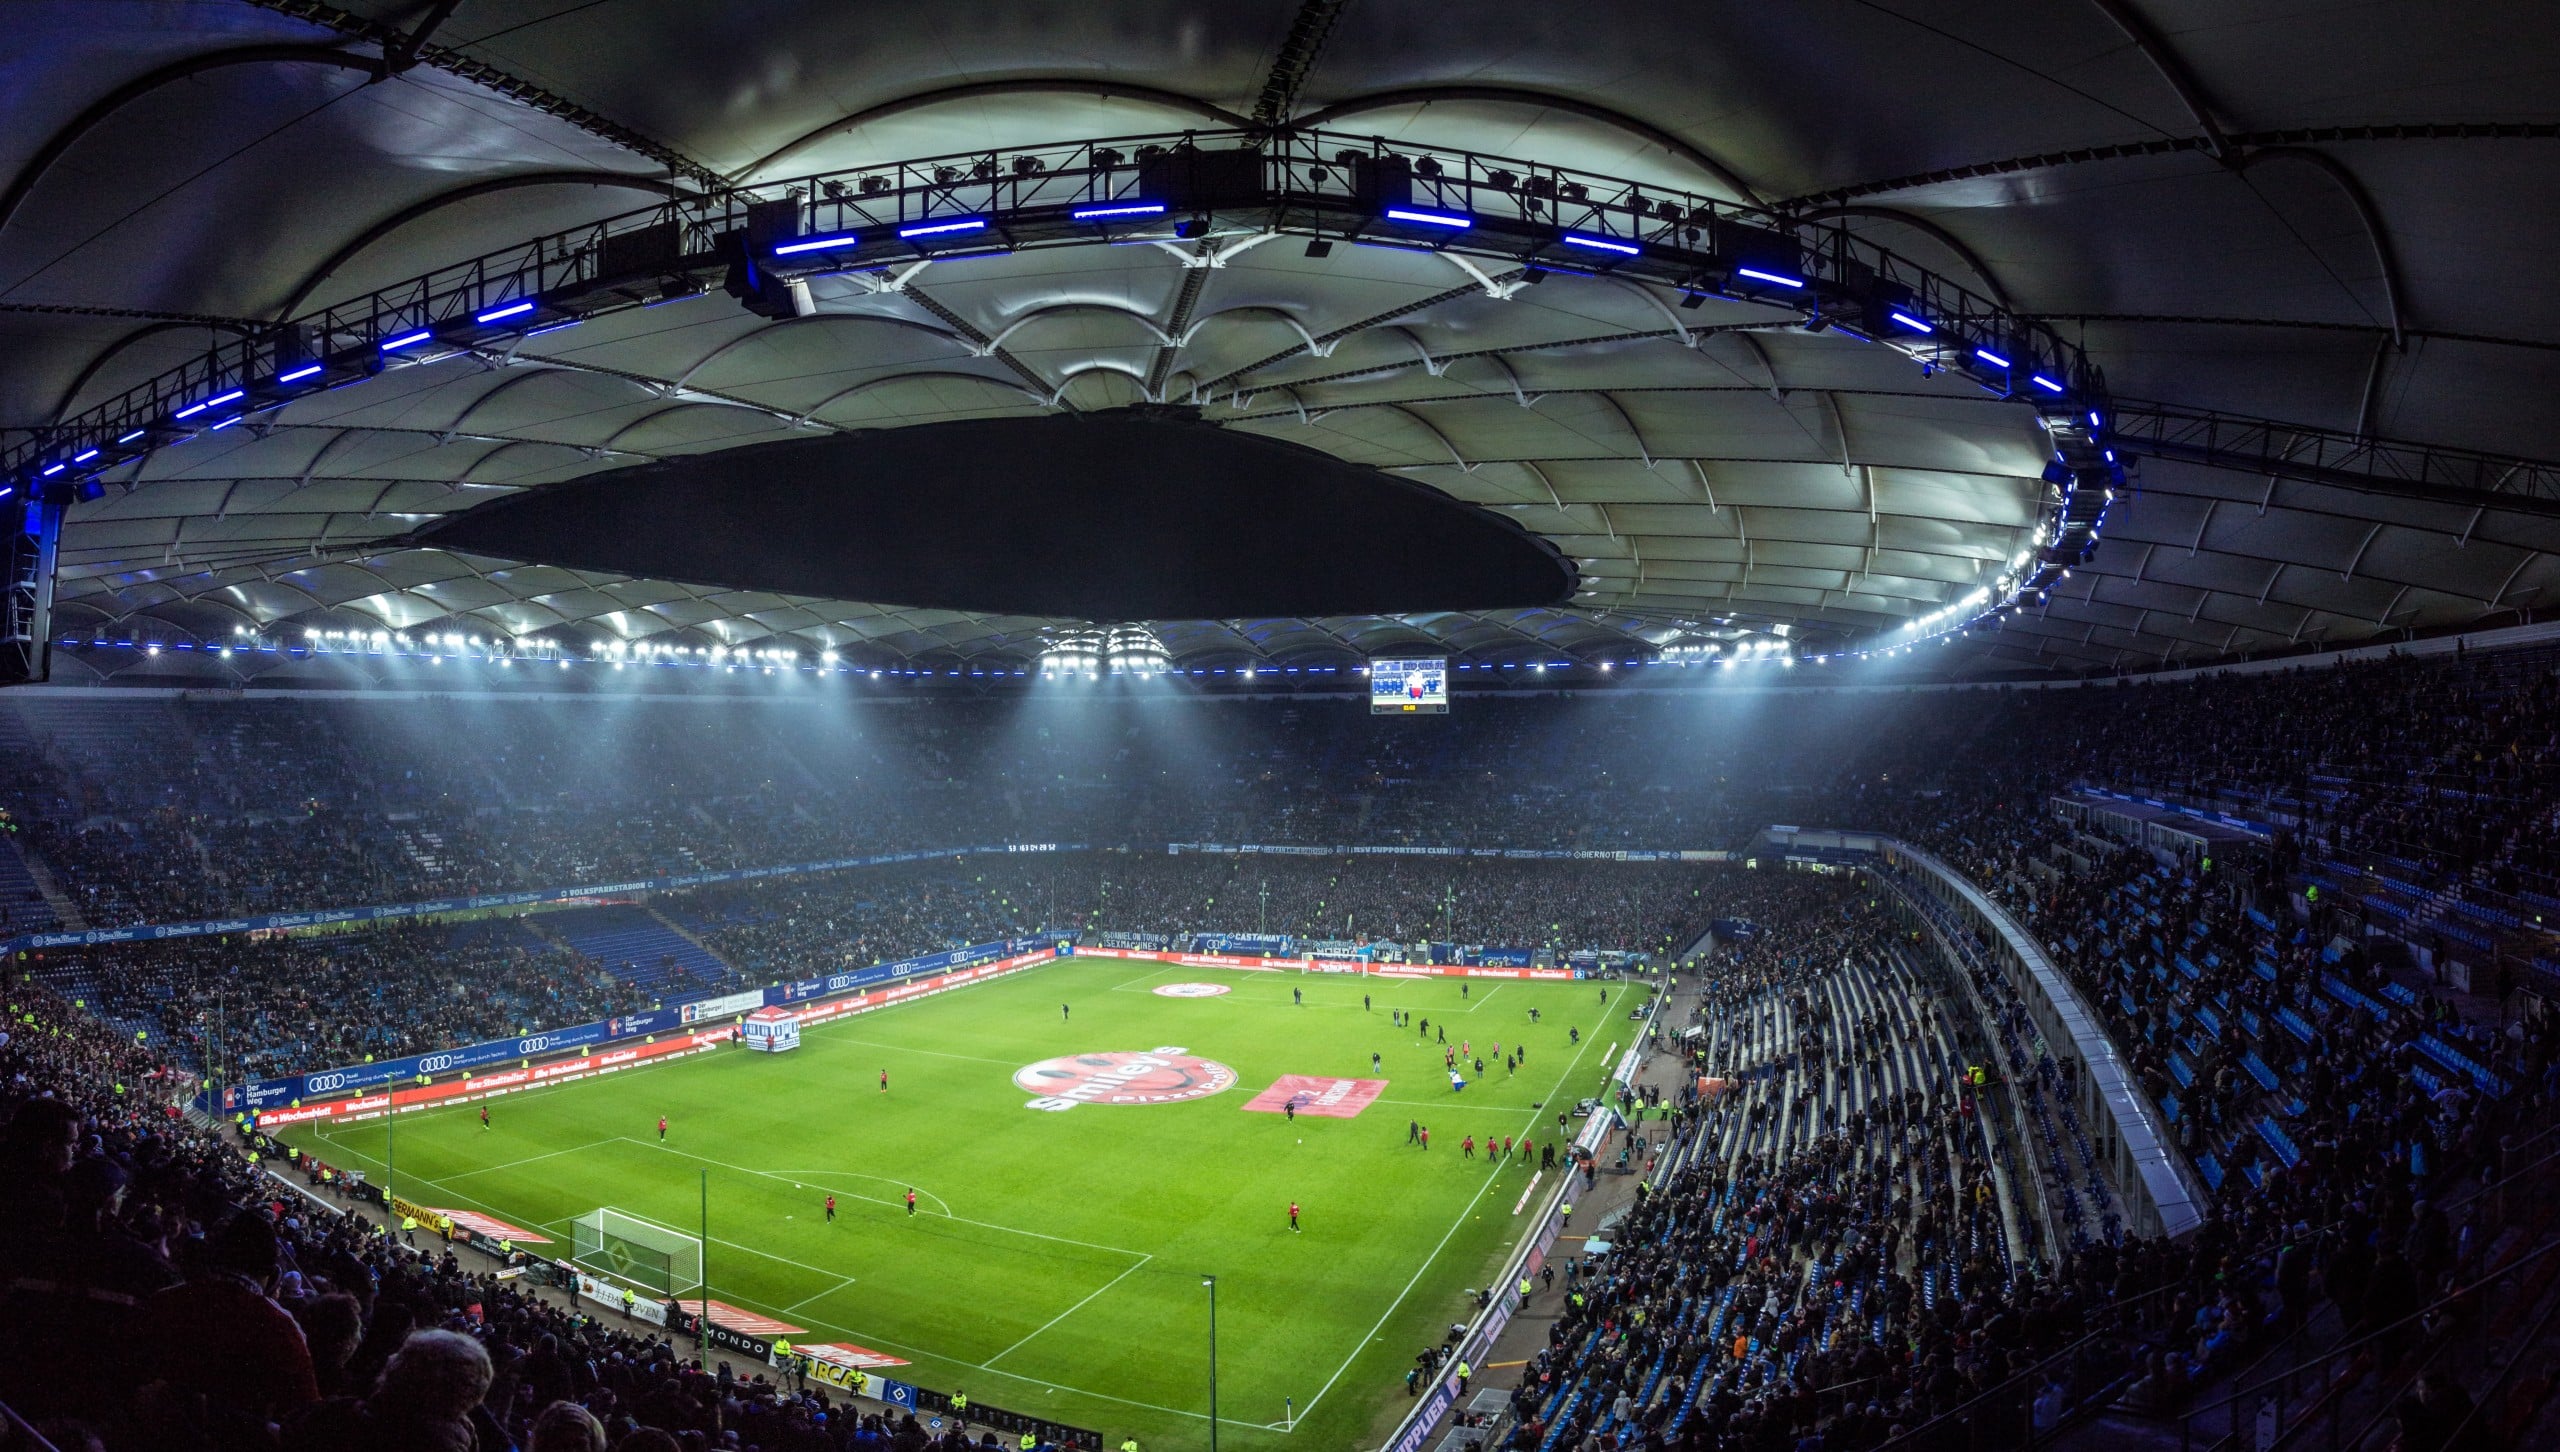 Durch den Umbau 1998 war das Volksparkstadion das erste deutsche Stadion, das WM-tauglich wurde. Foto: Mario Klassen via Unsplash